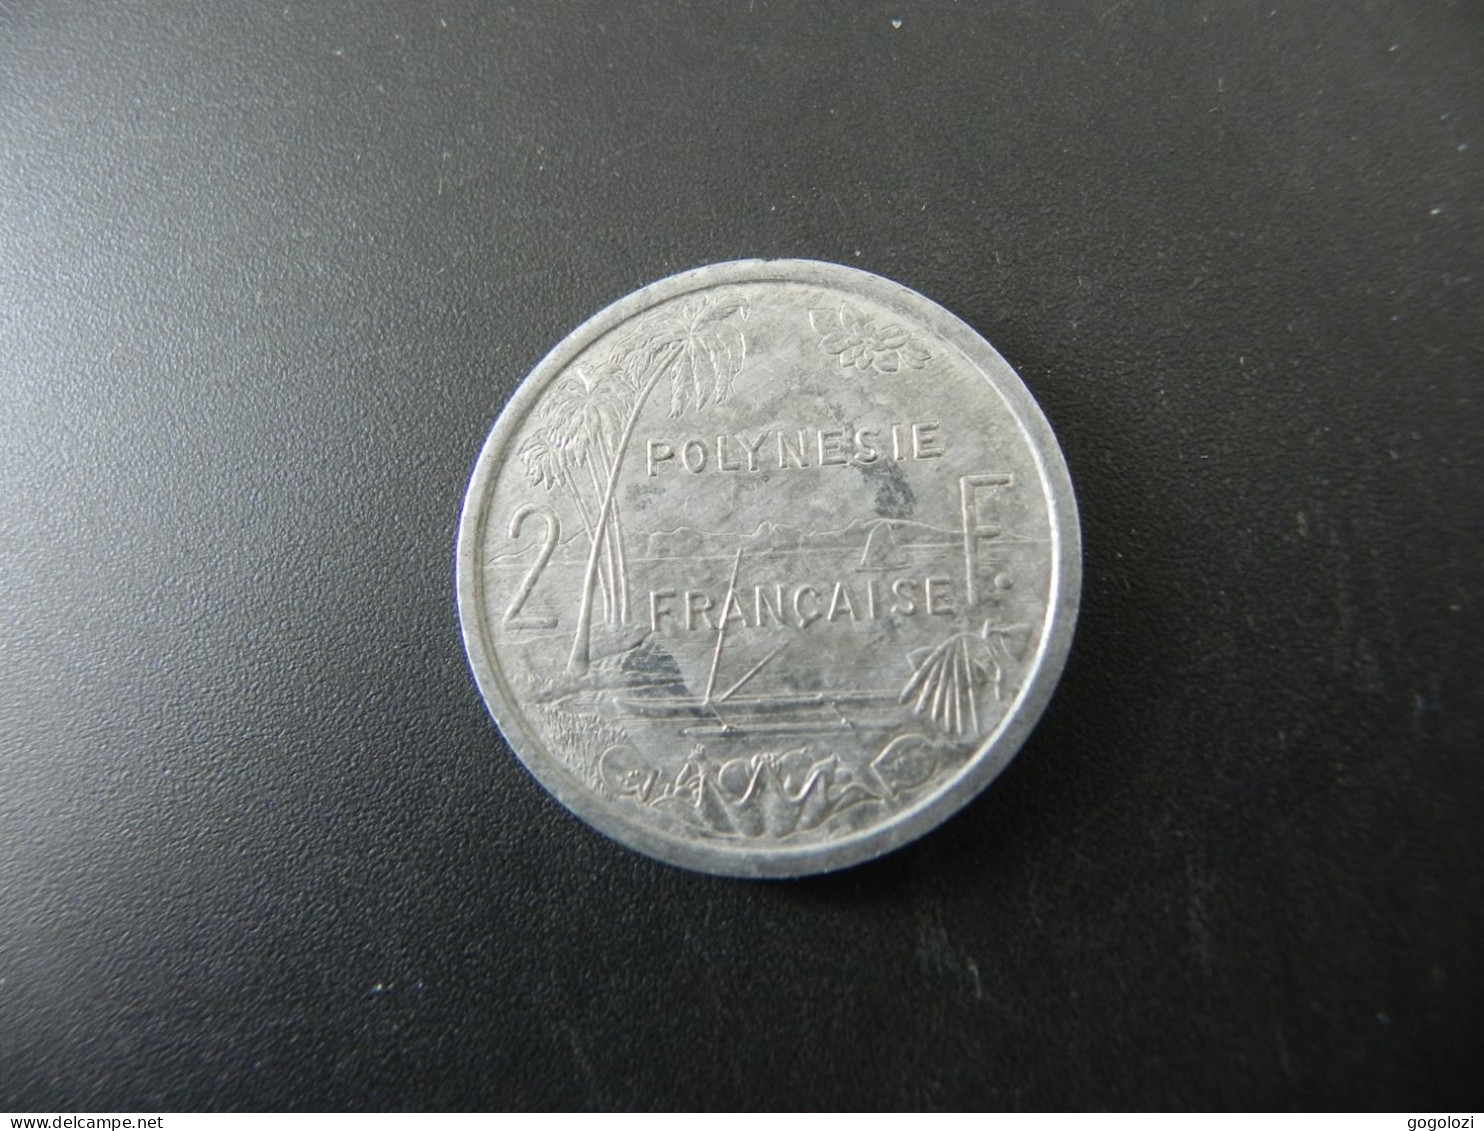 Polynesie Française 2 Francs 1989 - Frans-Polynesië